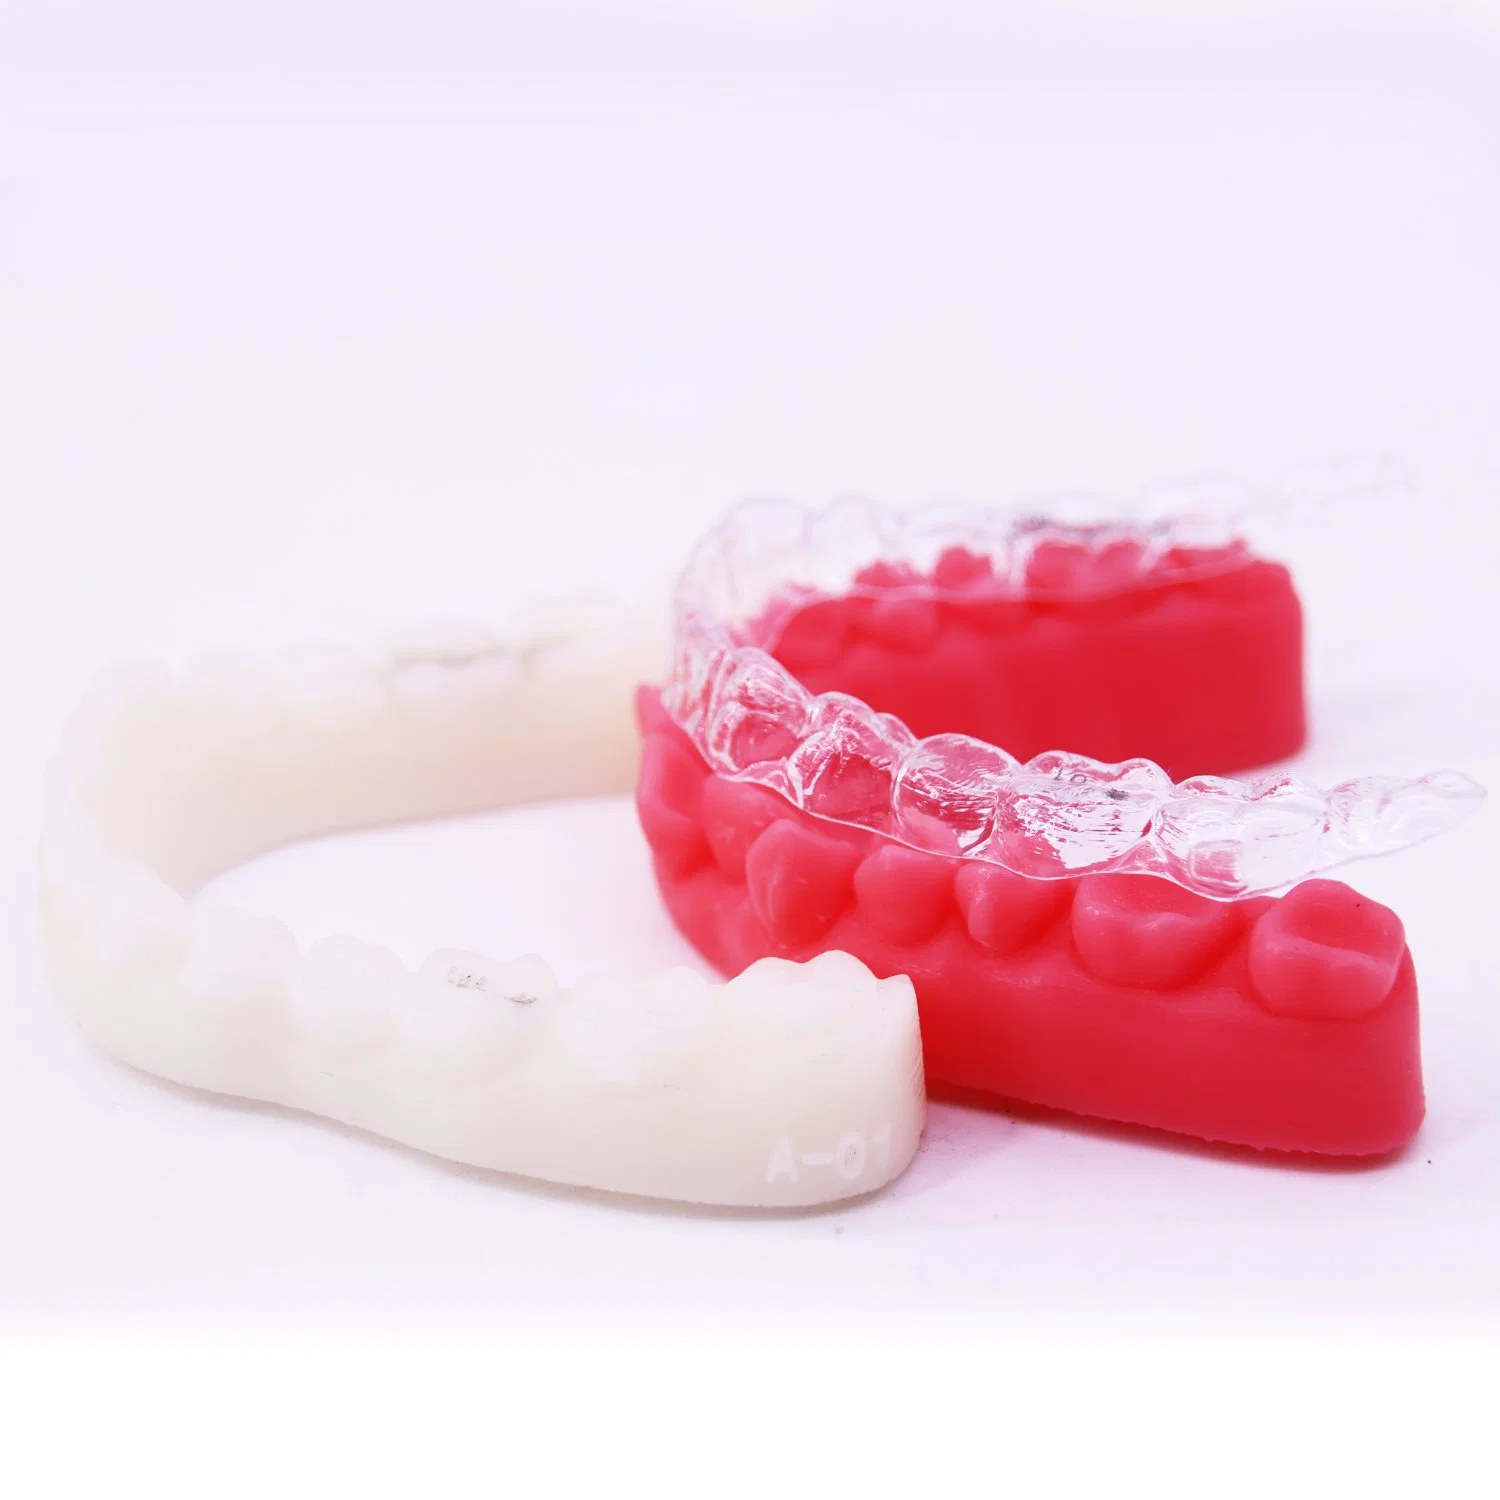 El mejor de ortodoncia láser industrial de SLA de resina impresión impresora 3D de la salud de la corona dental puente